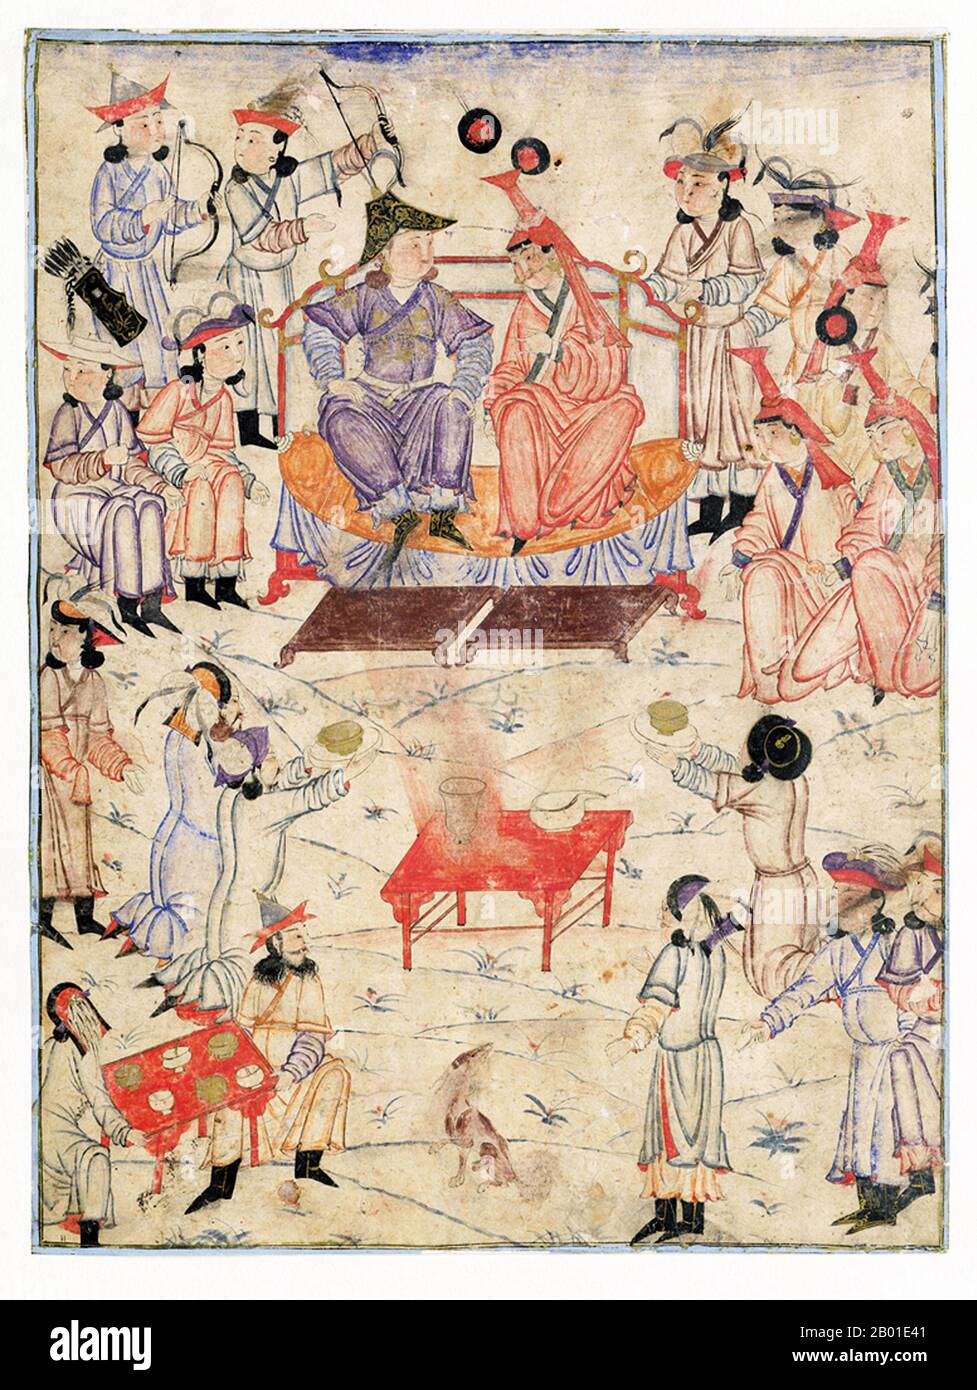 Iran/Mongolei: Ein mongolischer Khan und Khatun, umgeben vom Gericht, mit männlichen Verwandten des Herrschers rechts, seinen weiblichen Verwandten links und seinen Höflingen vorne. Abbildung aus Rashid al-DIN Hamadani's (1235-1318) Jami al-tawarikh, c. 1305. Das Jāmiʿ al-tawārīkh („Kompendium der Chroniken“) ist ein iranisches Literatur- und Geschichtswerk, das von Rashid al-DIN Hamadani zu Beginn des 14. Jahrhunderts geschrieben wurde und als die bedeutendste einzige Informationsquelle über die Ilchanatenzeit und das Mongolische Reich gilt. Rashid war Staatsmann, Historiker und Arzt im Ilchanate Iran Stockfoto